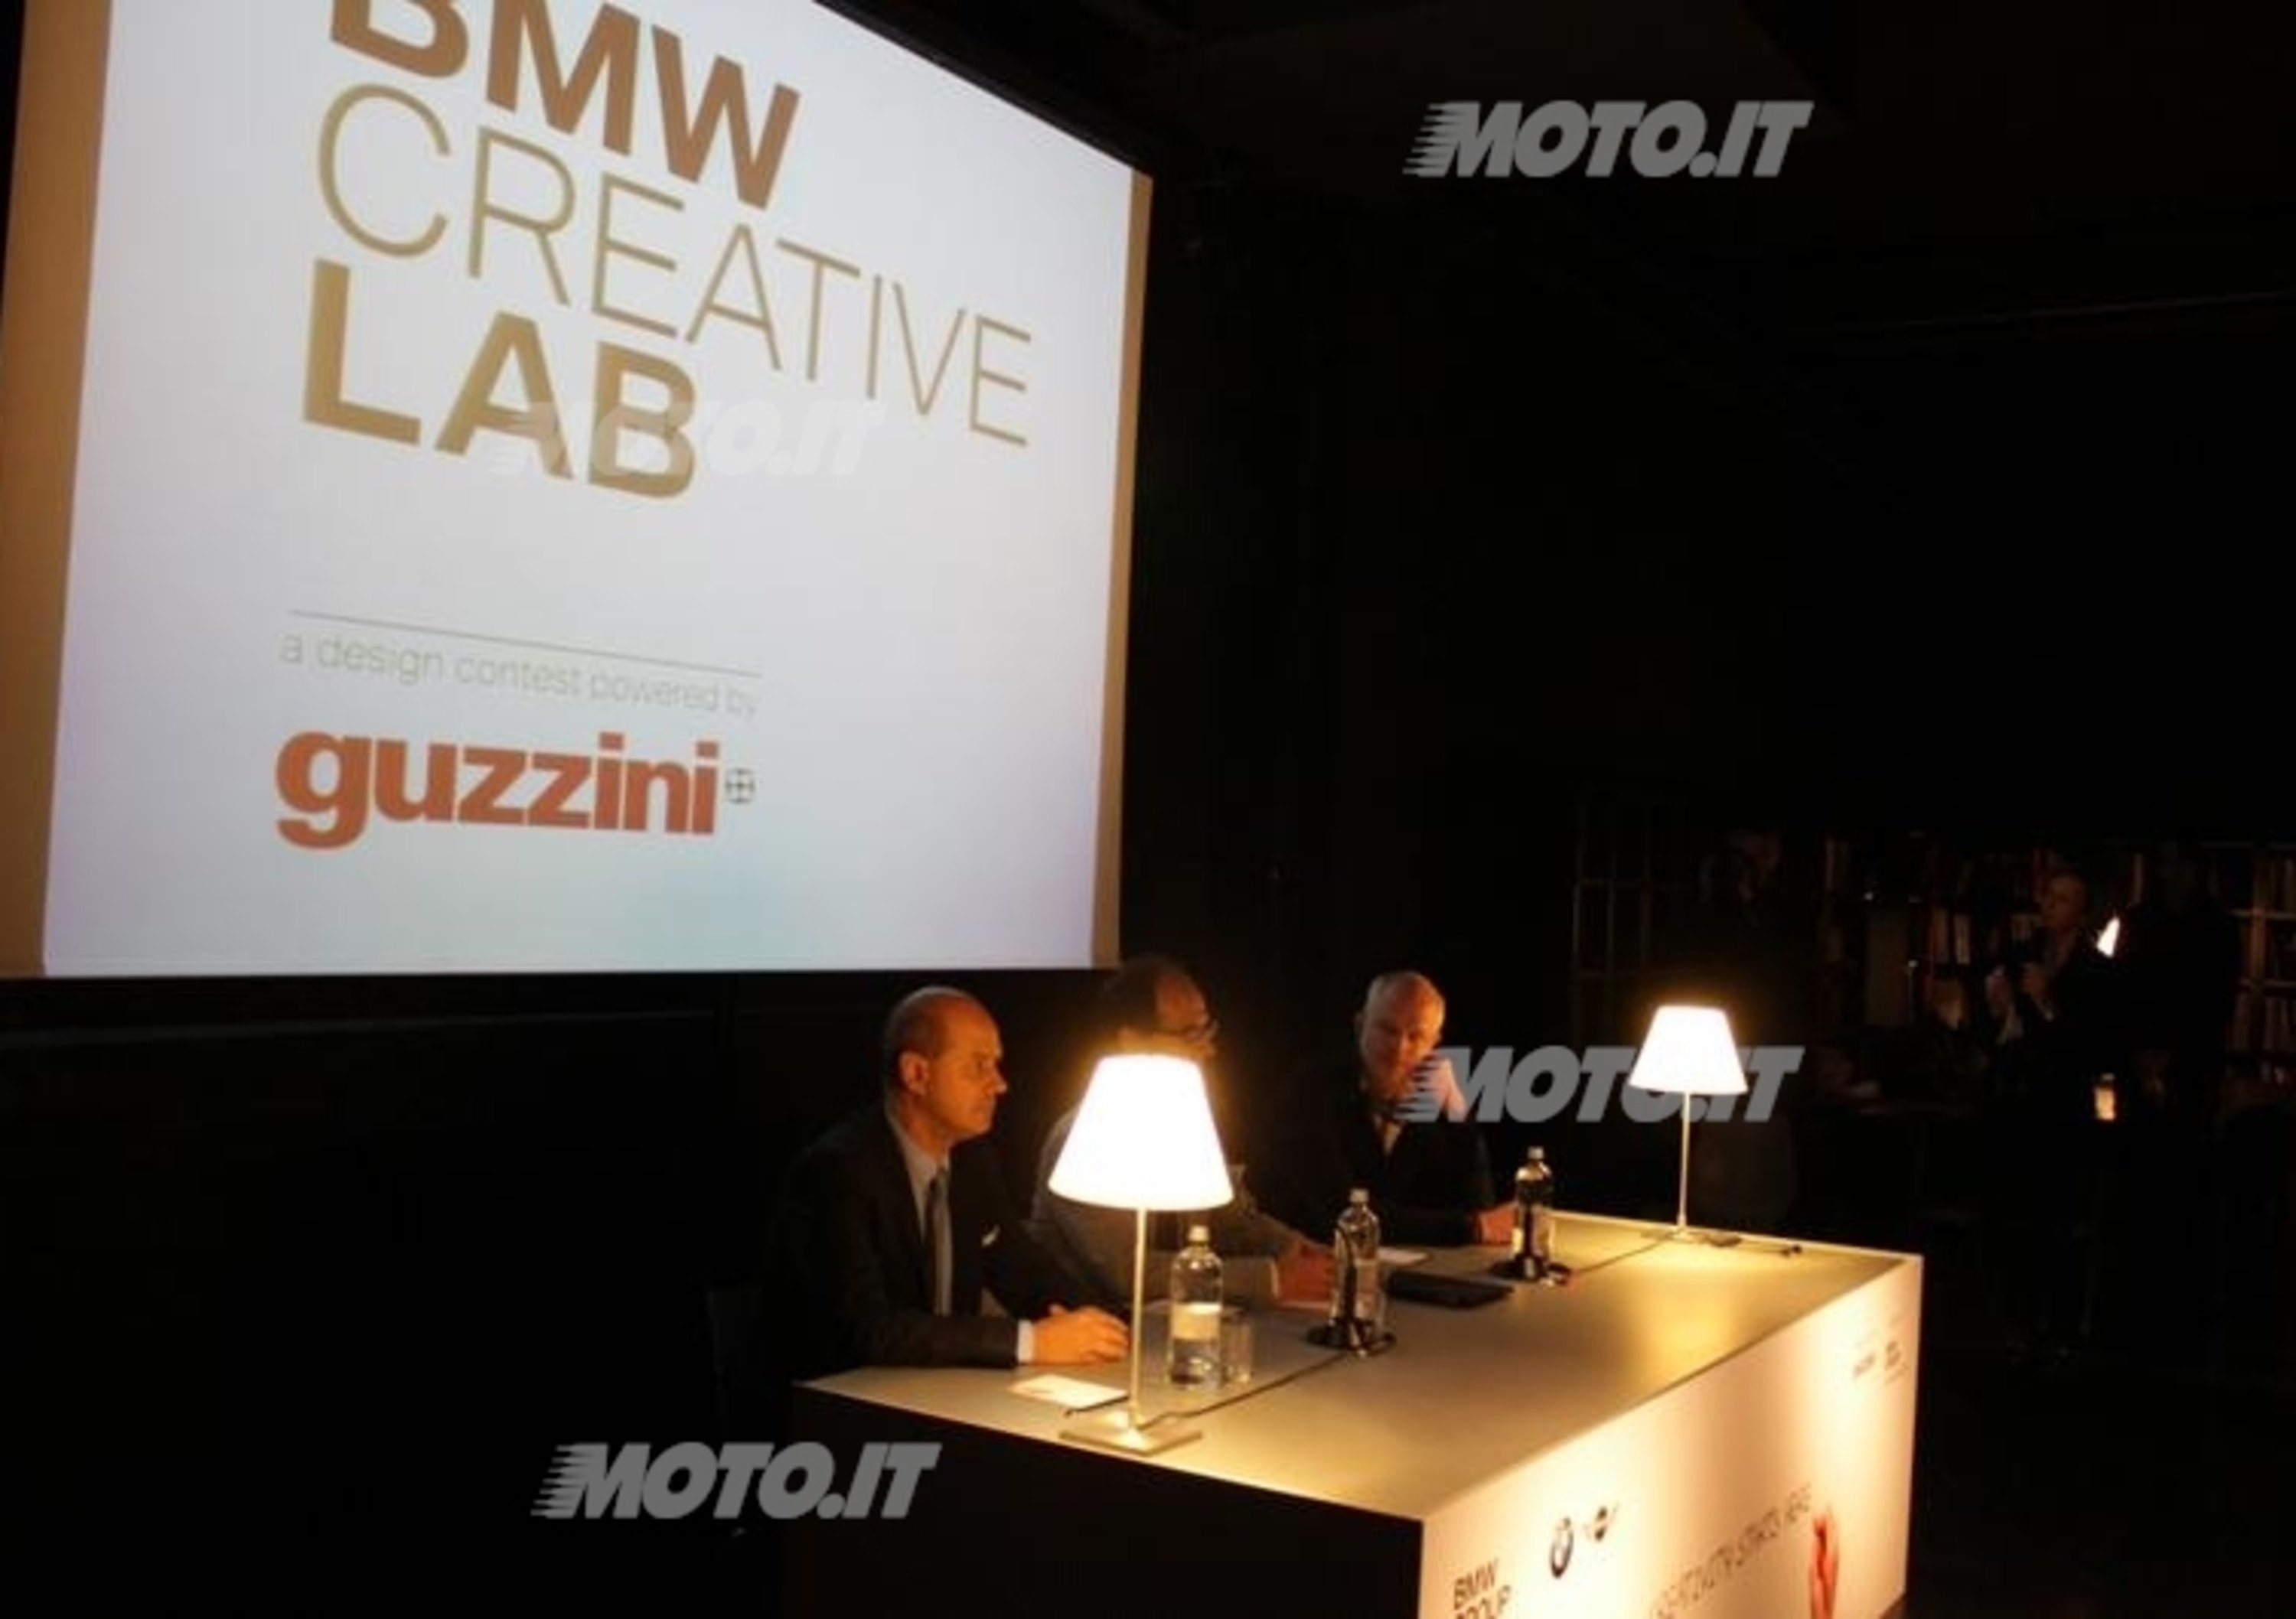 BMW Creative Lab: in premio un contratto per un anno